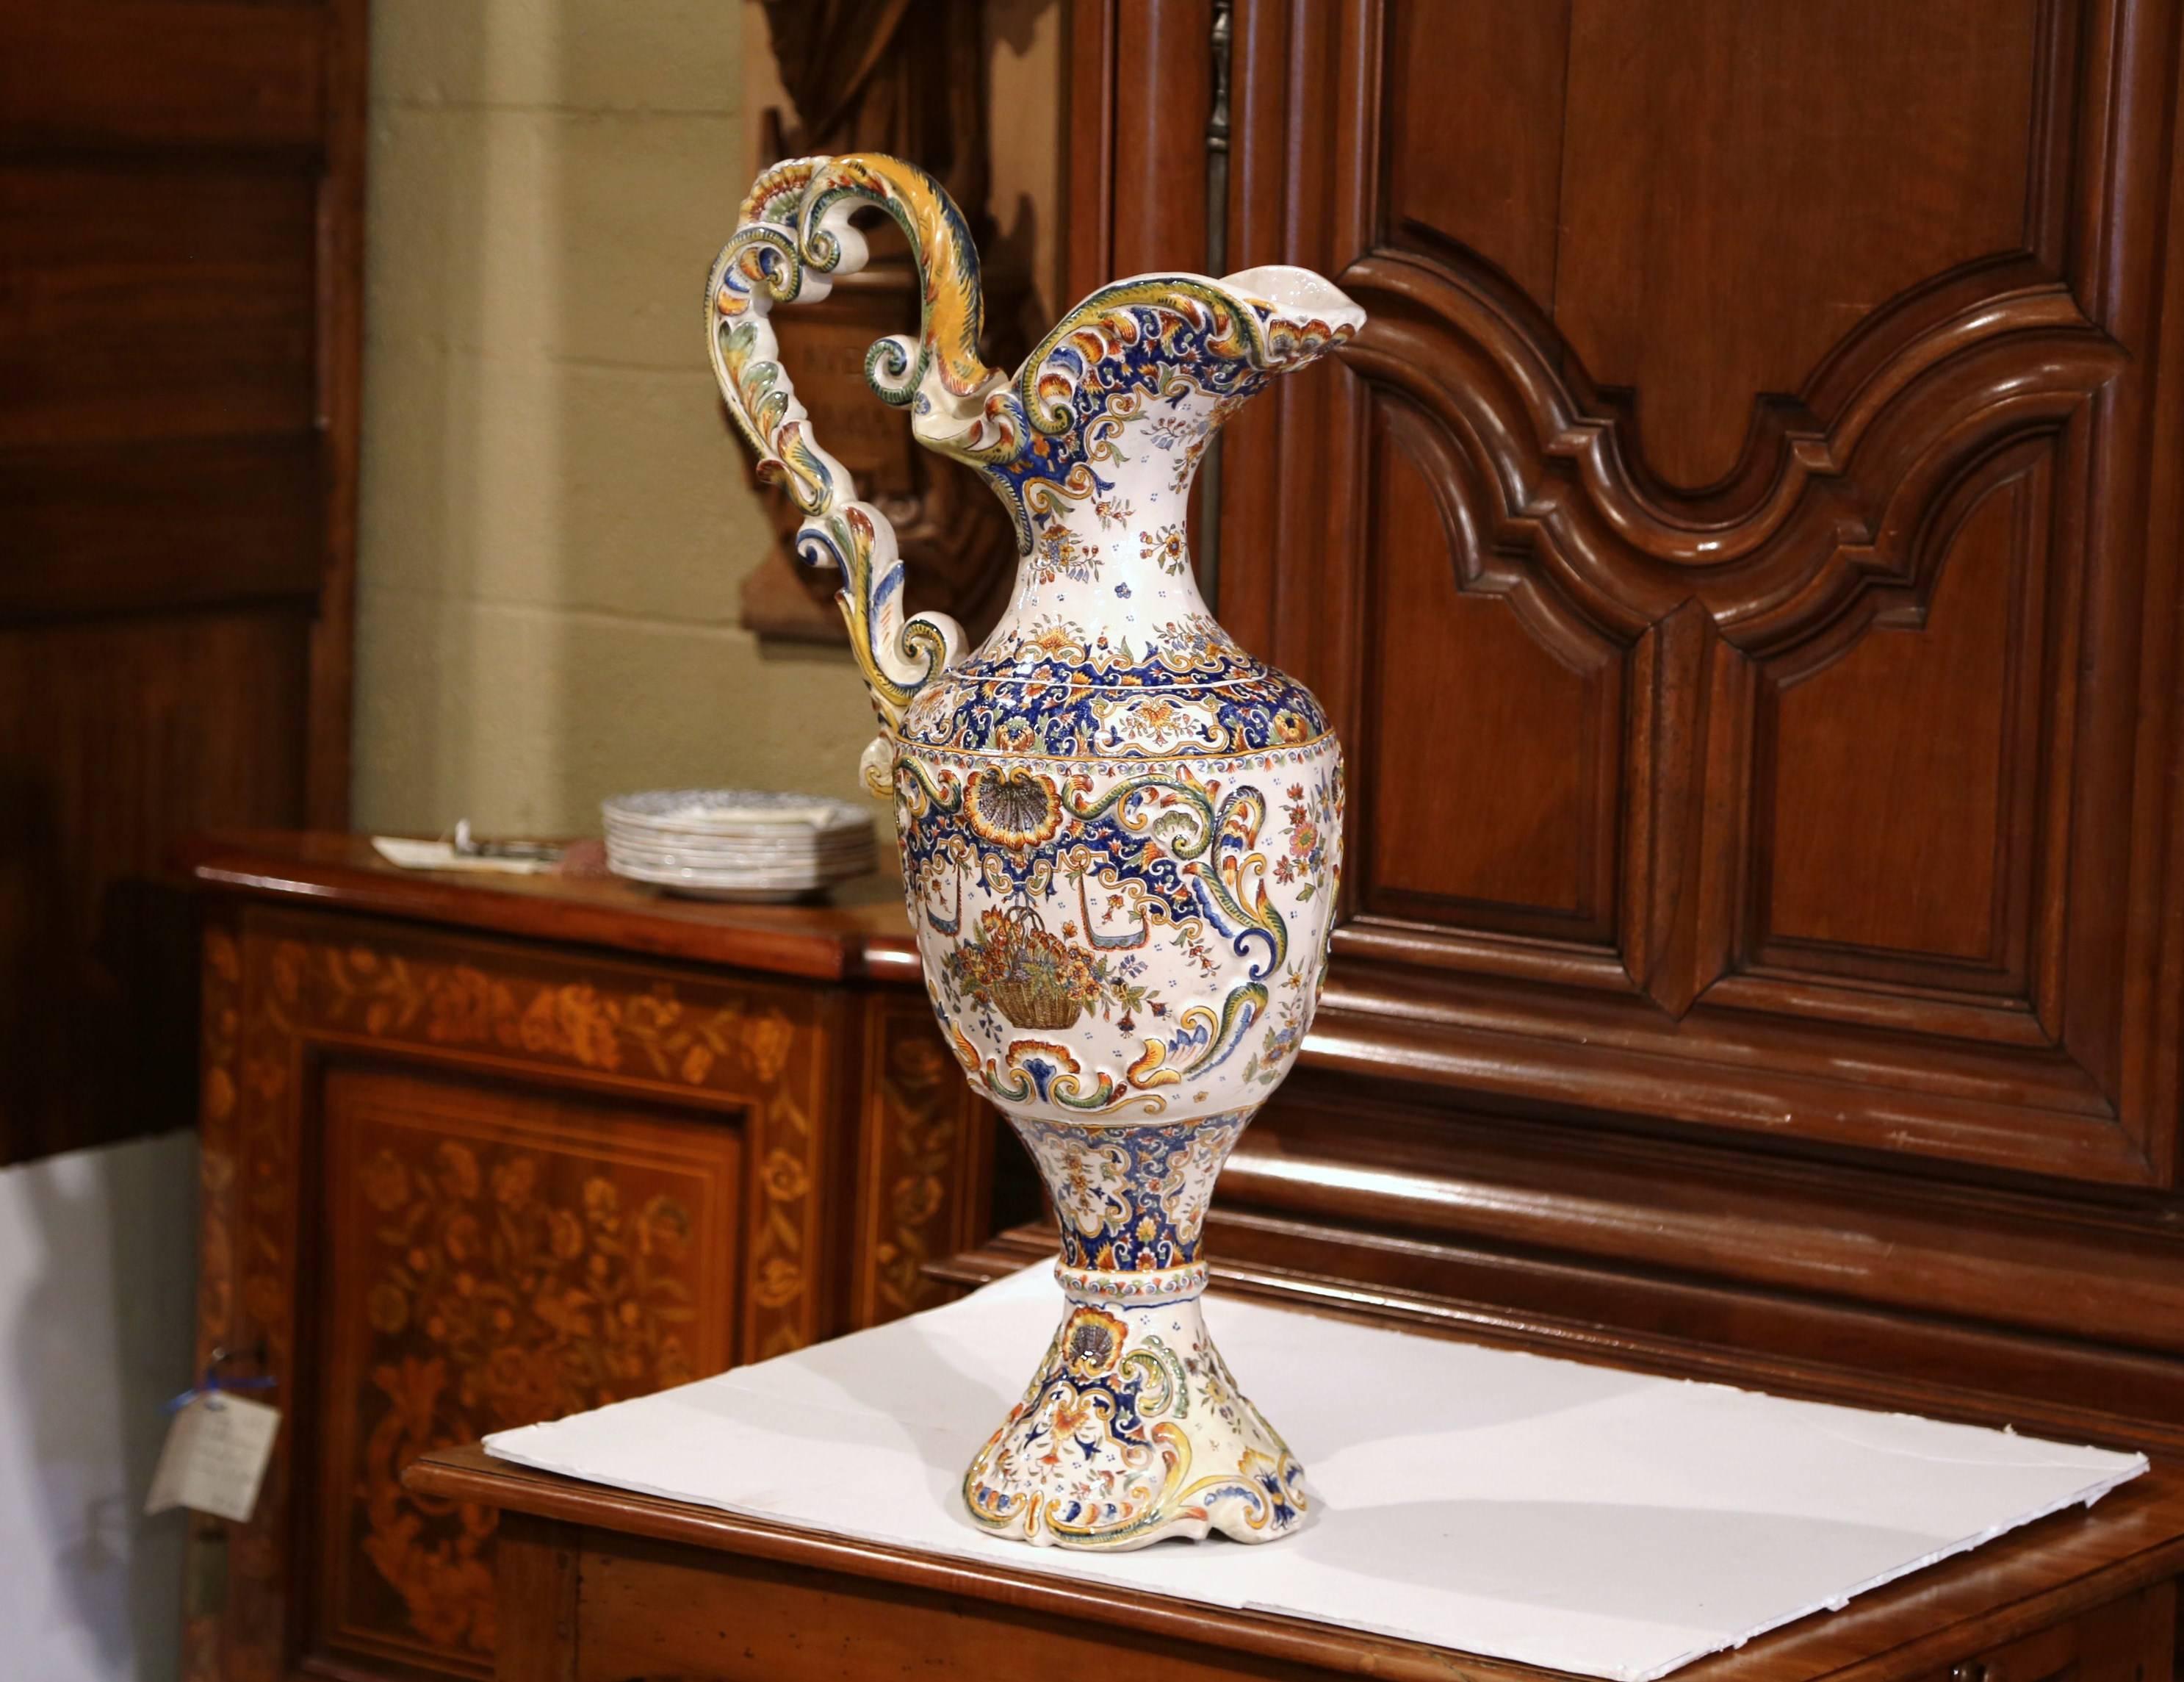 Diese hohe, antike Aiguiere wurde um 1860 in Rouen, Frankreich, hergestellt. Dieser zierliche, verzierte Keramikkrug hat einen großen Henkel, einen abgeschrägten Ausguss, vier Füße und eine insgesamt elegante Form. Die farbenfrohe Fayence-Vase zeigt